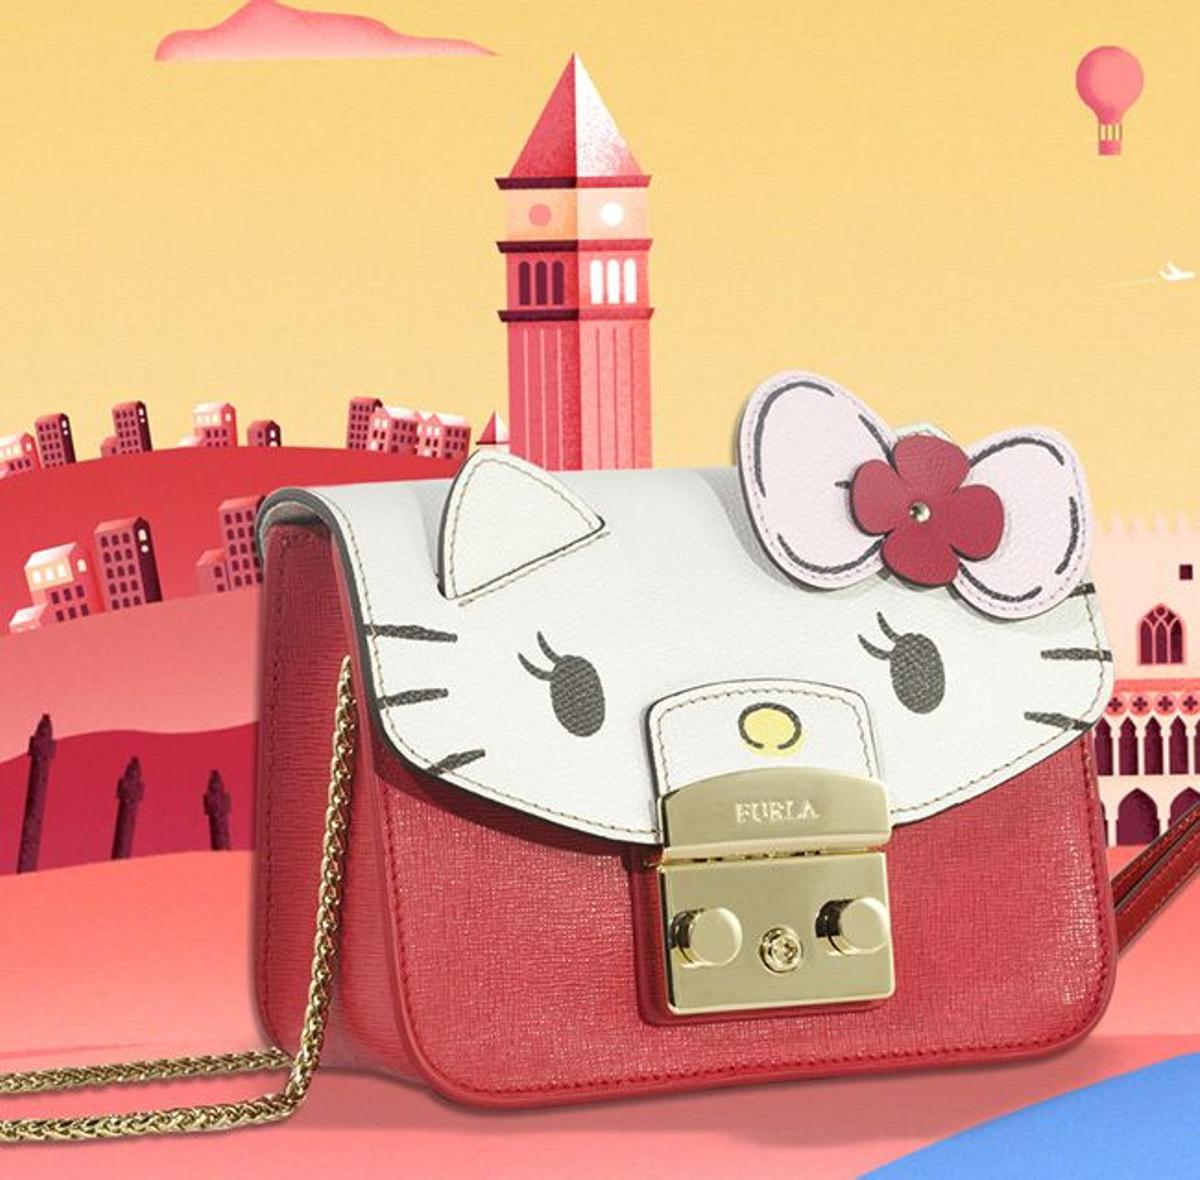 El bolso más cuqui que Furla ha dedicado a Hello Kitty